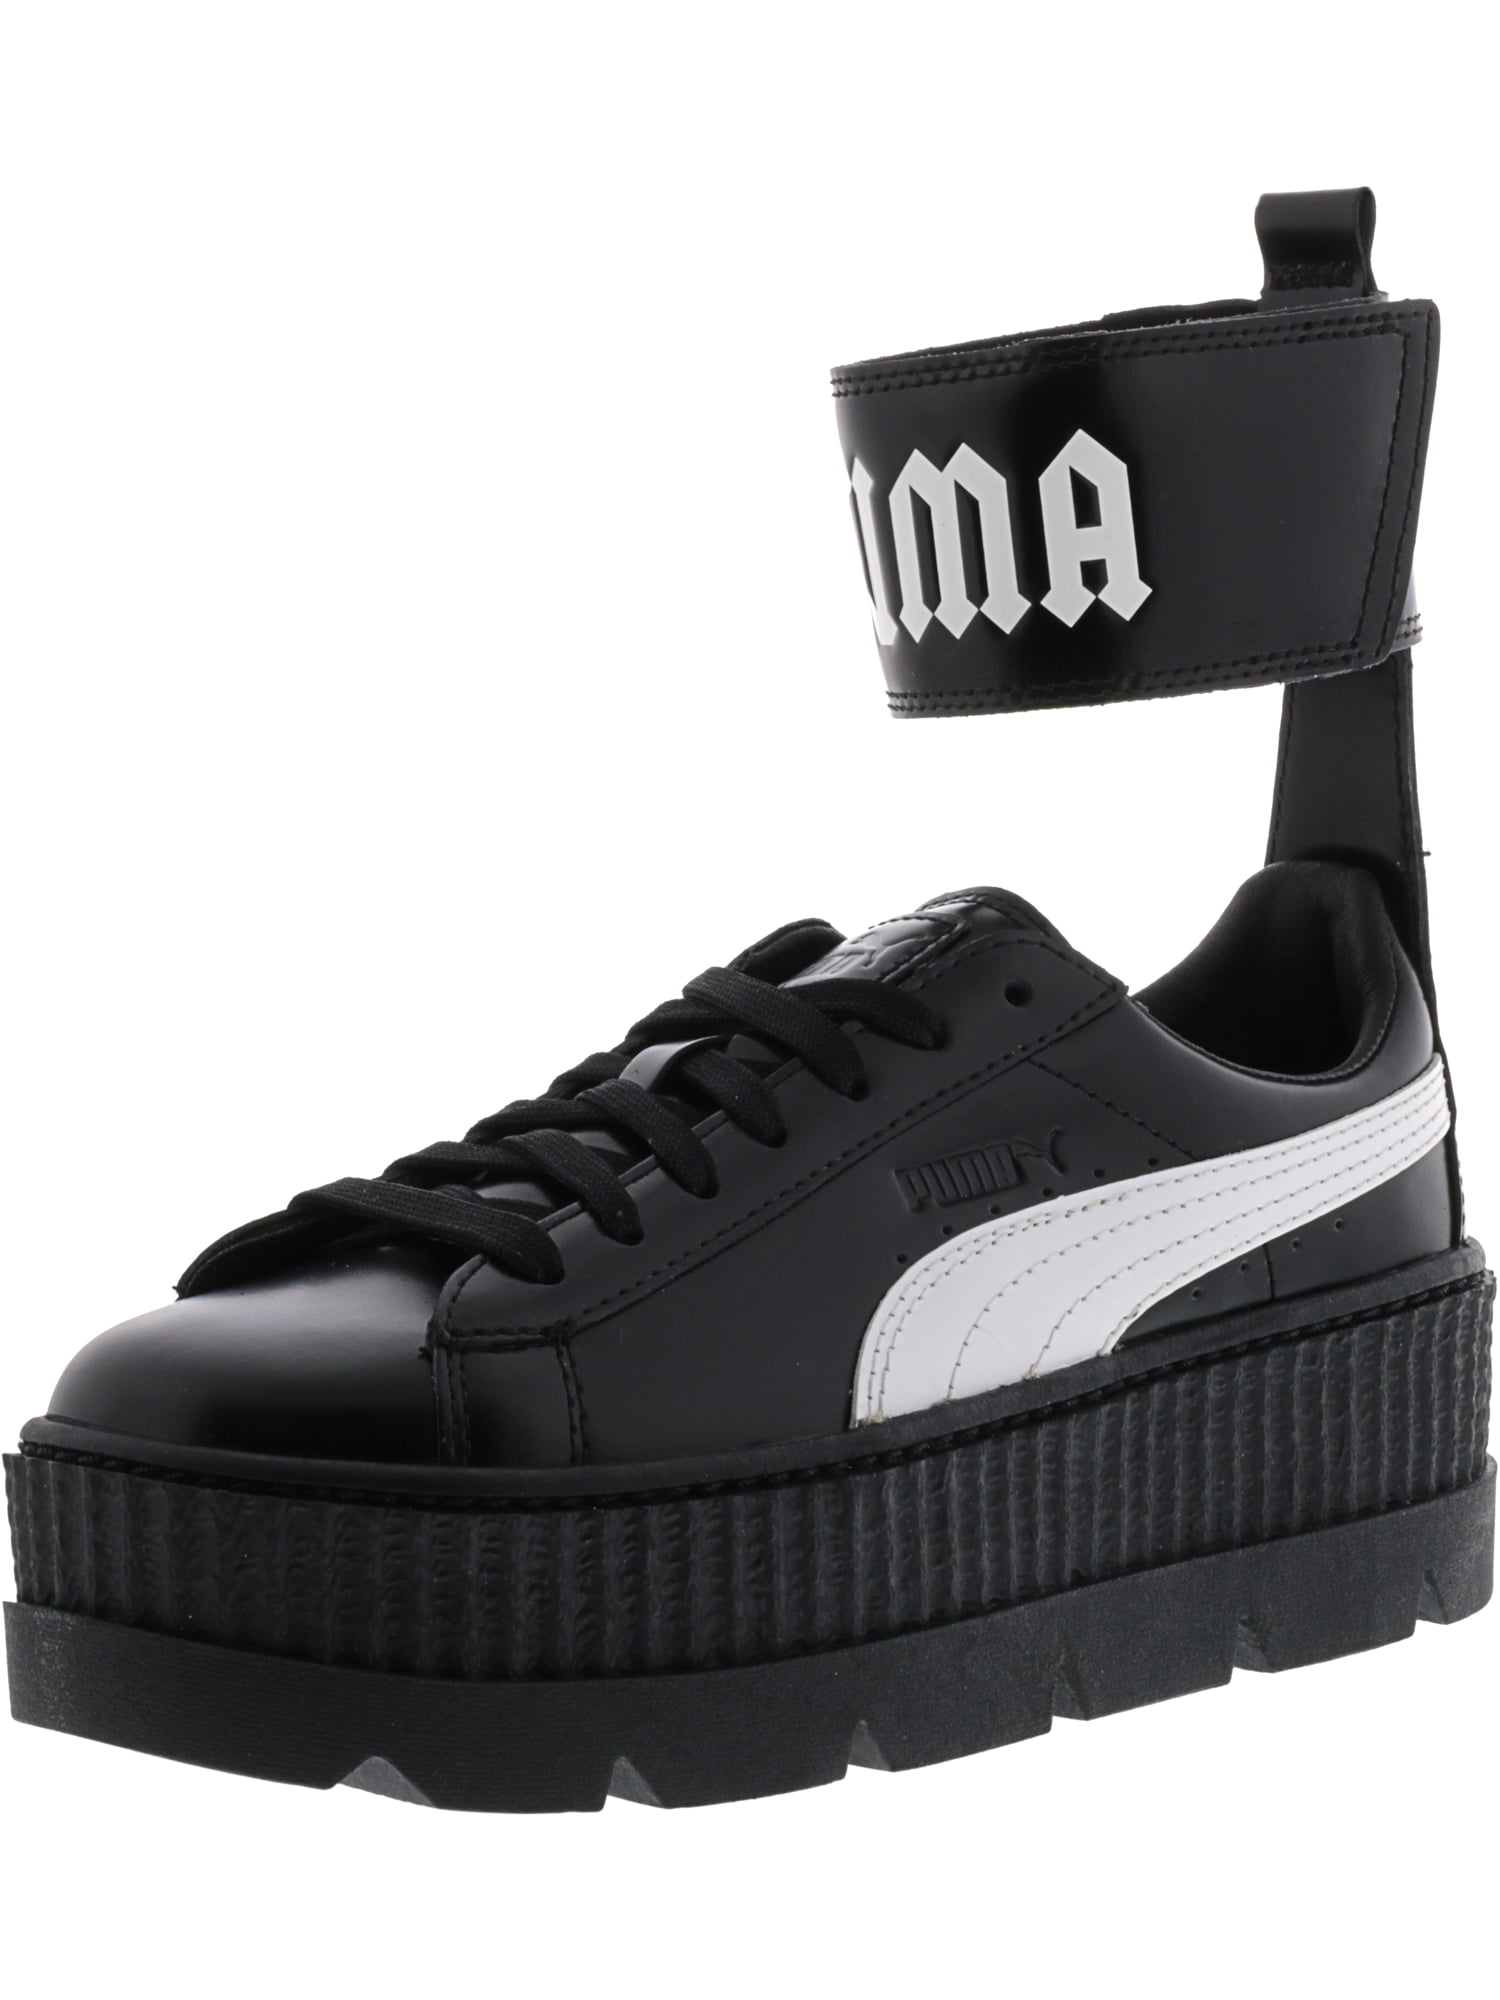 puma women's fenty x ankle strap sneakers